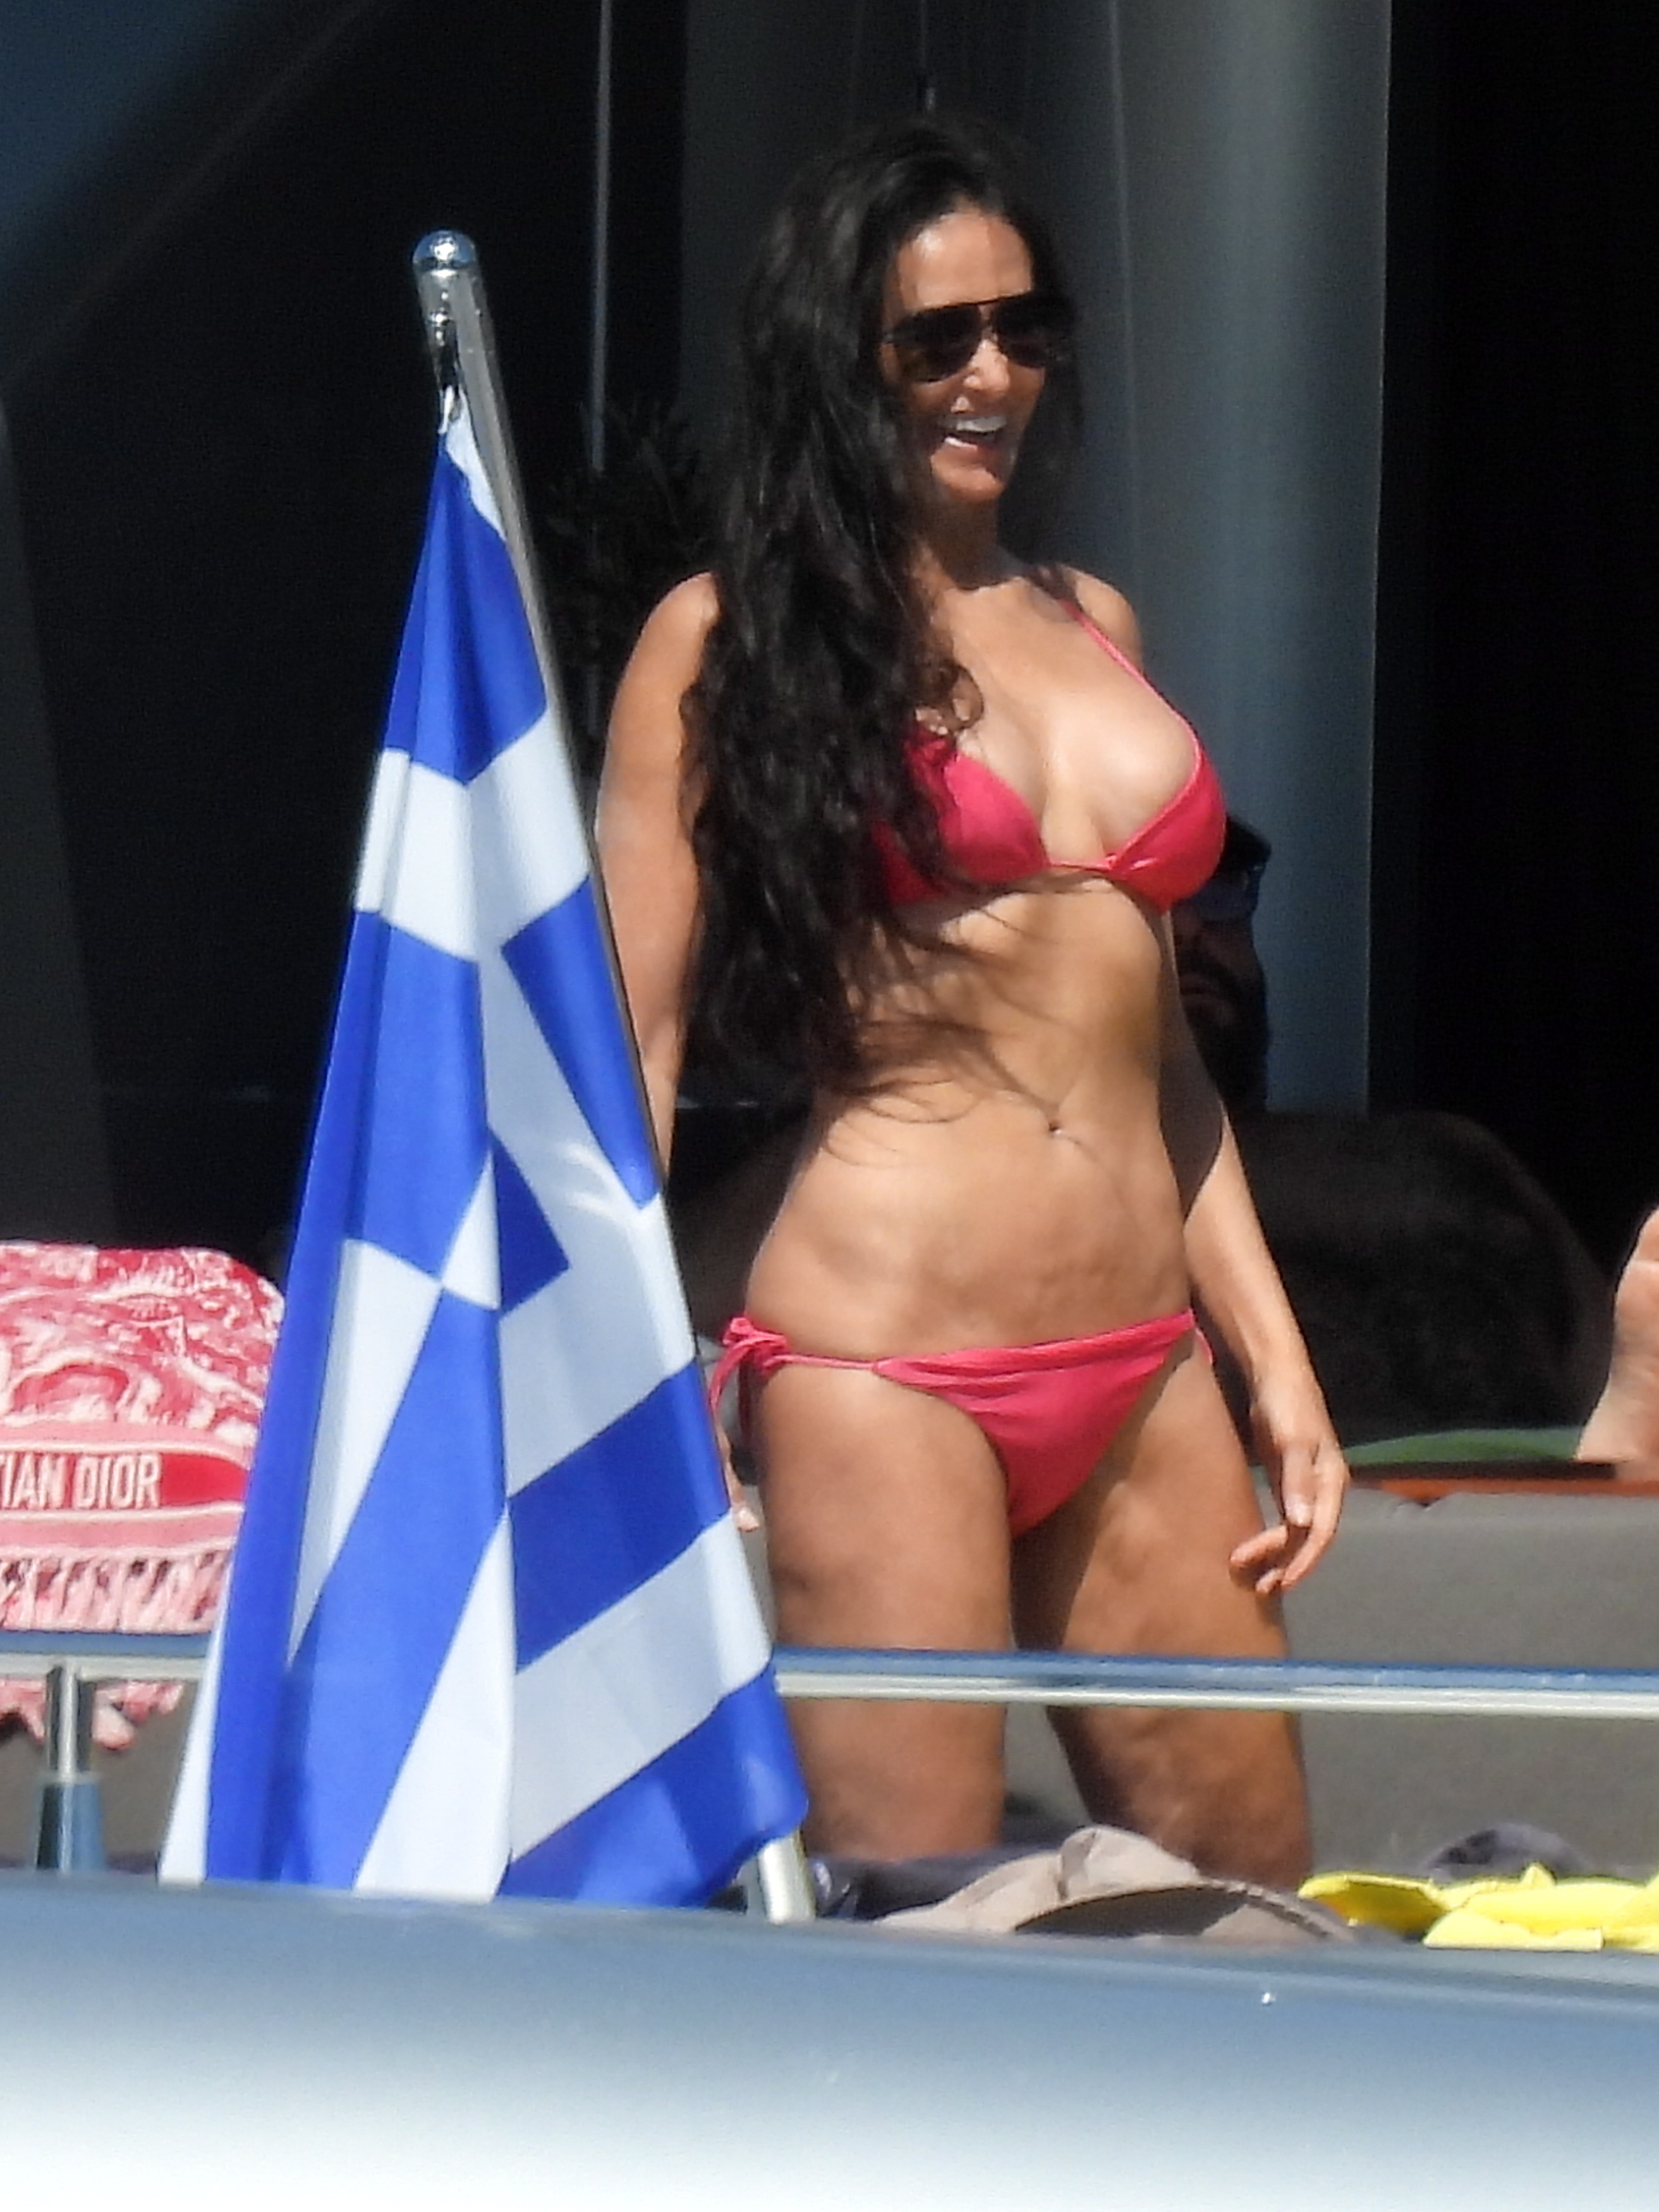 Una de las Ãºltimas imÃ¡genes de Demi. De vacaciones en Grecia, con un bikini fucsia y la belleza deslumbrante de siemprePhoto Â© 2022 Splash News/The Grosby Group